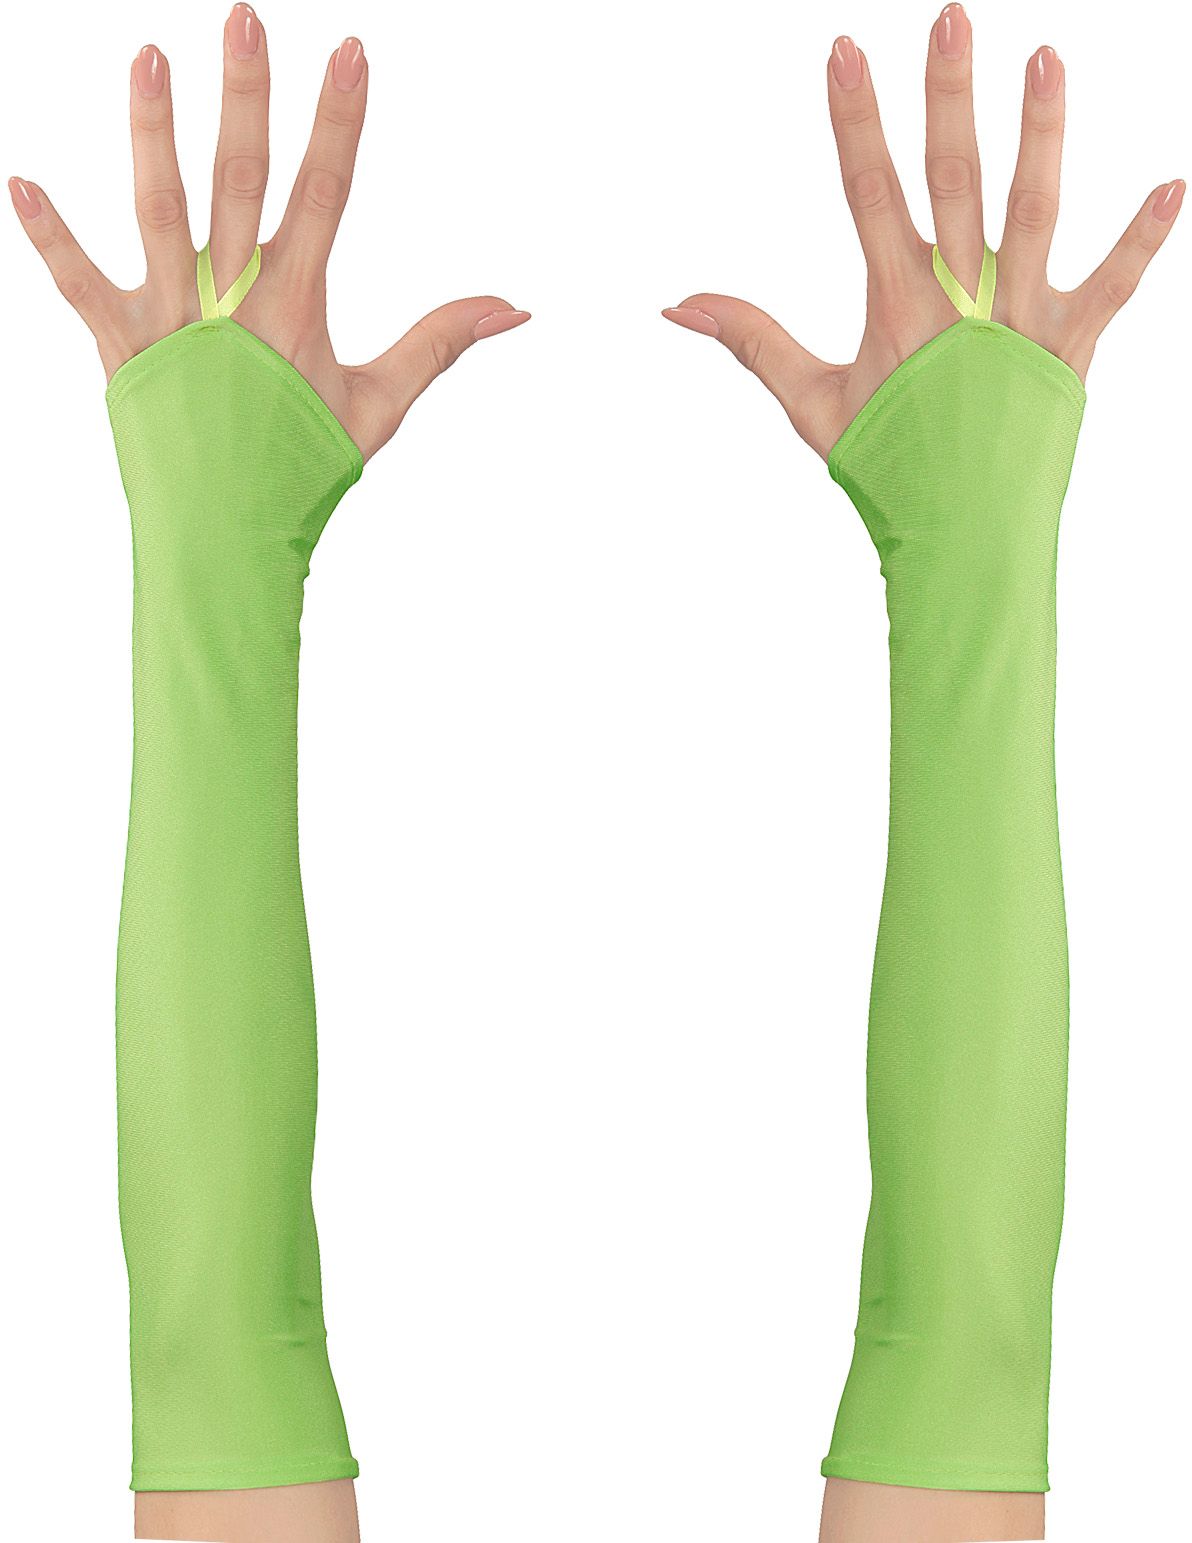 Neon groene toploze satijnen handschoenen